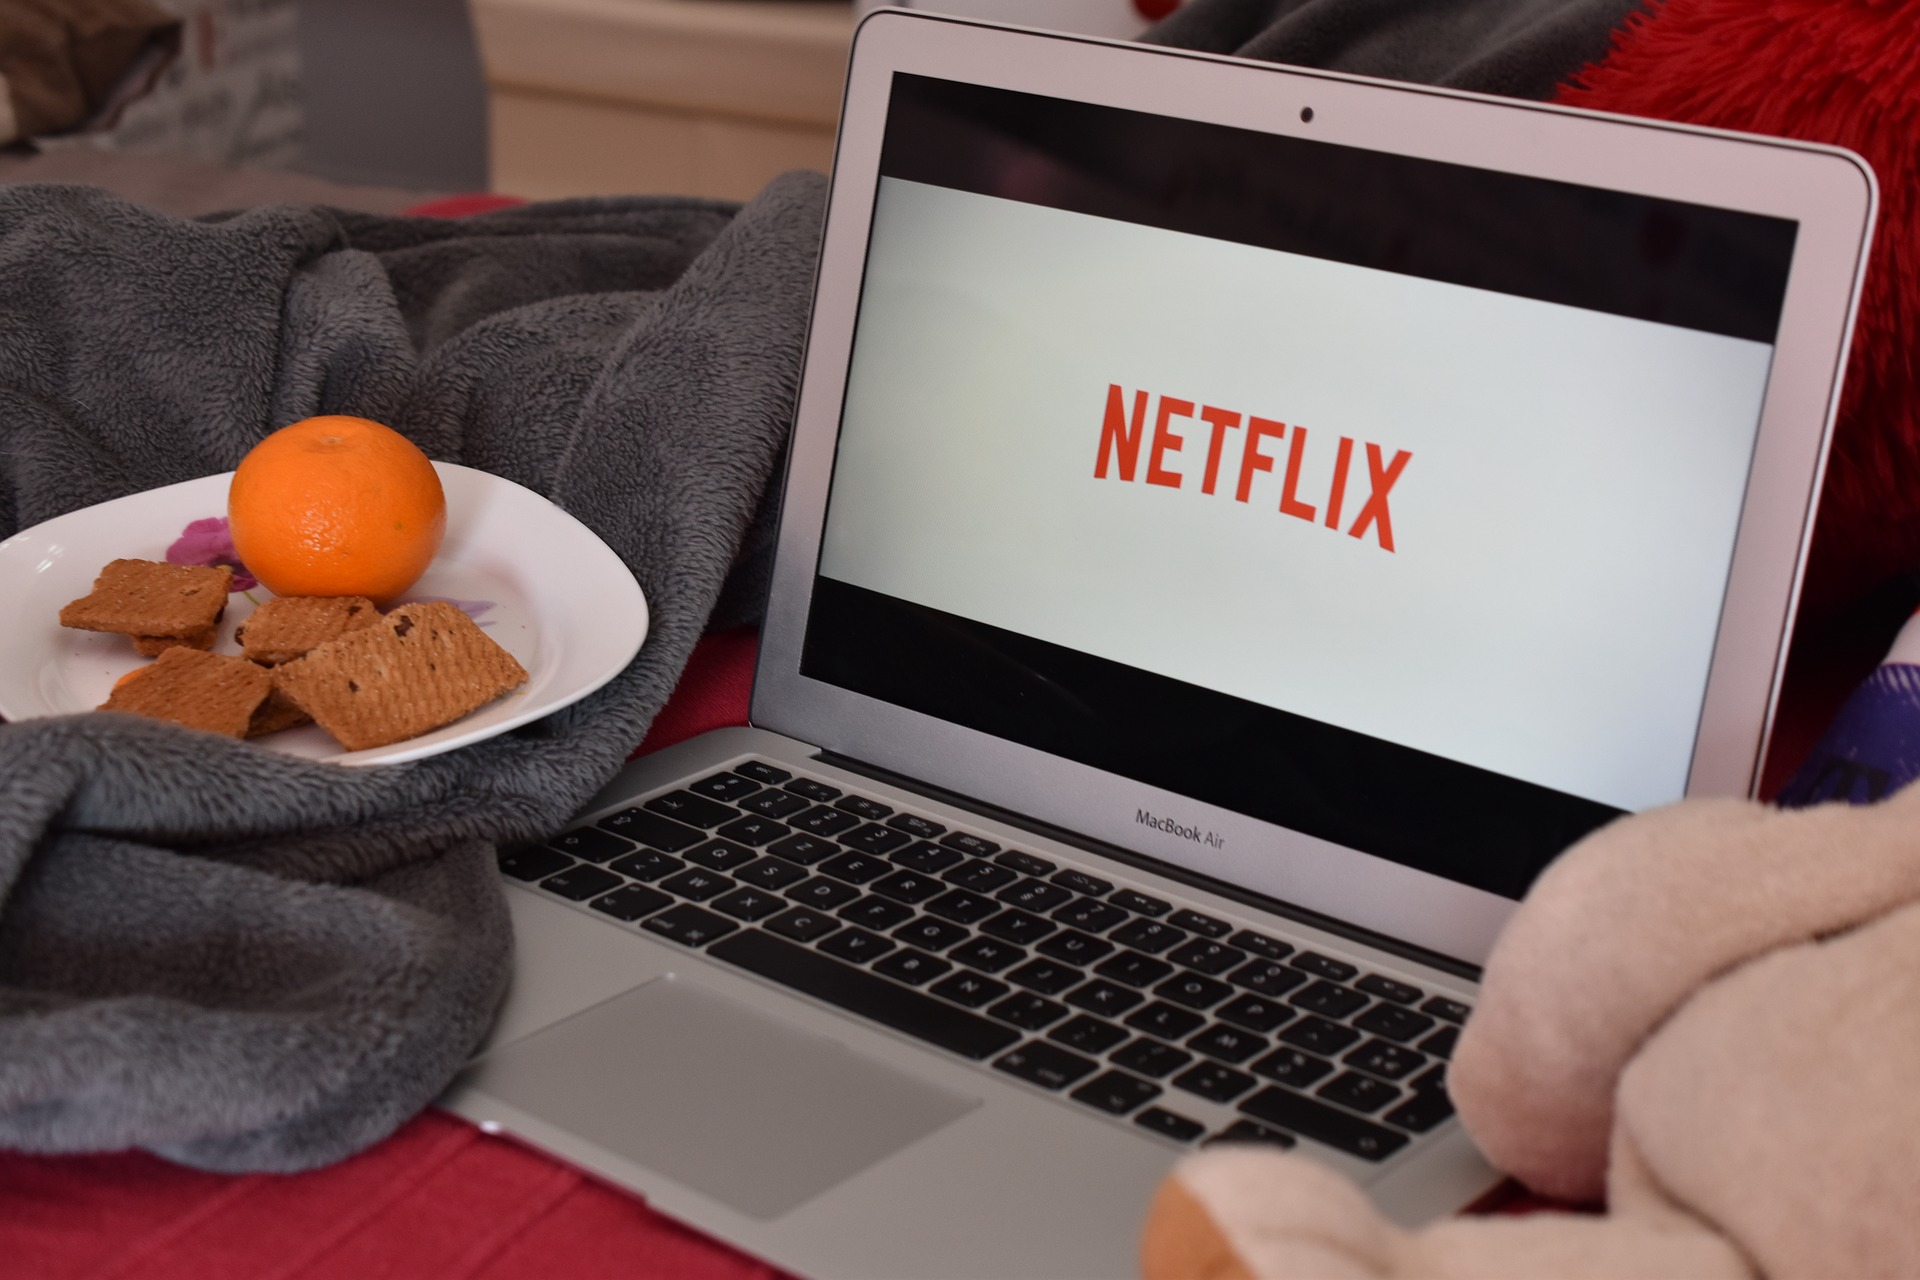 Netflix on a MacBook Air